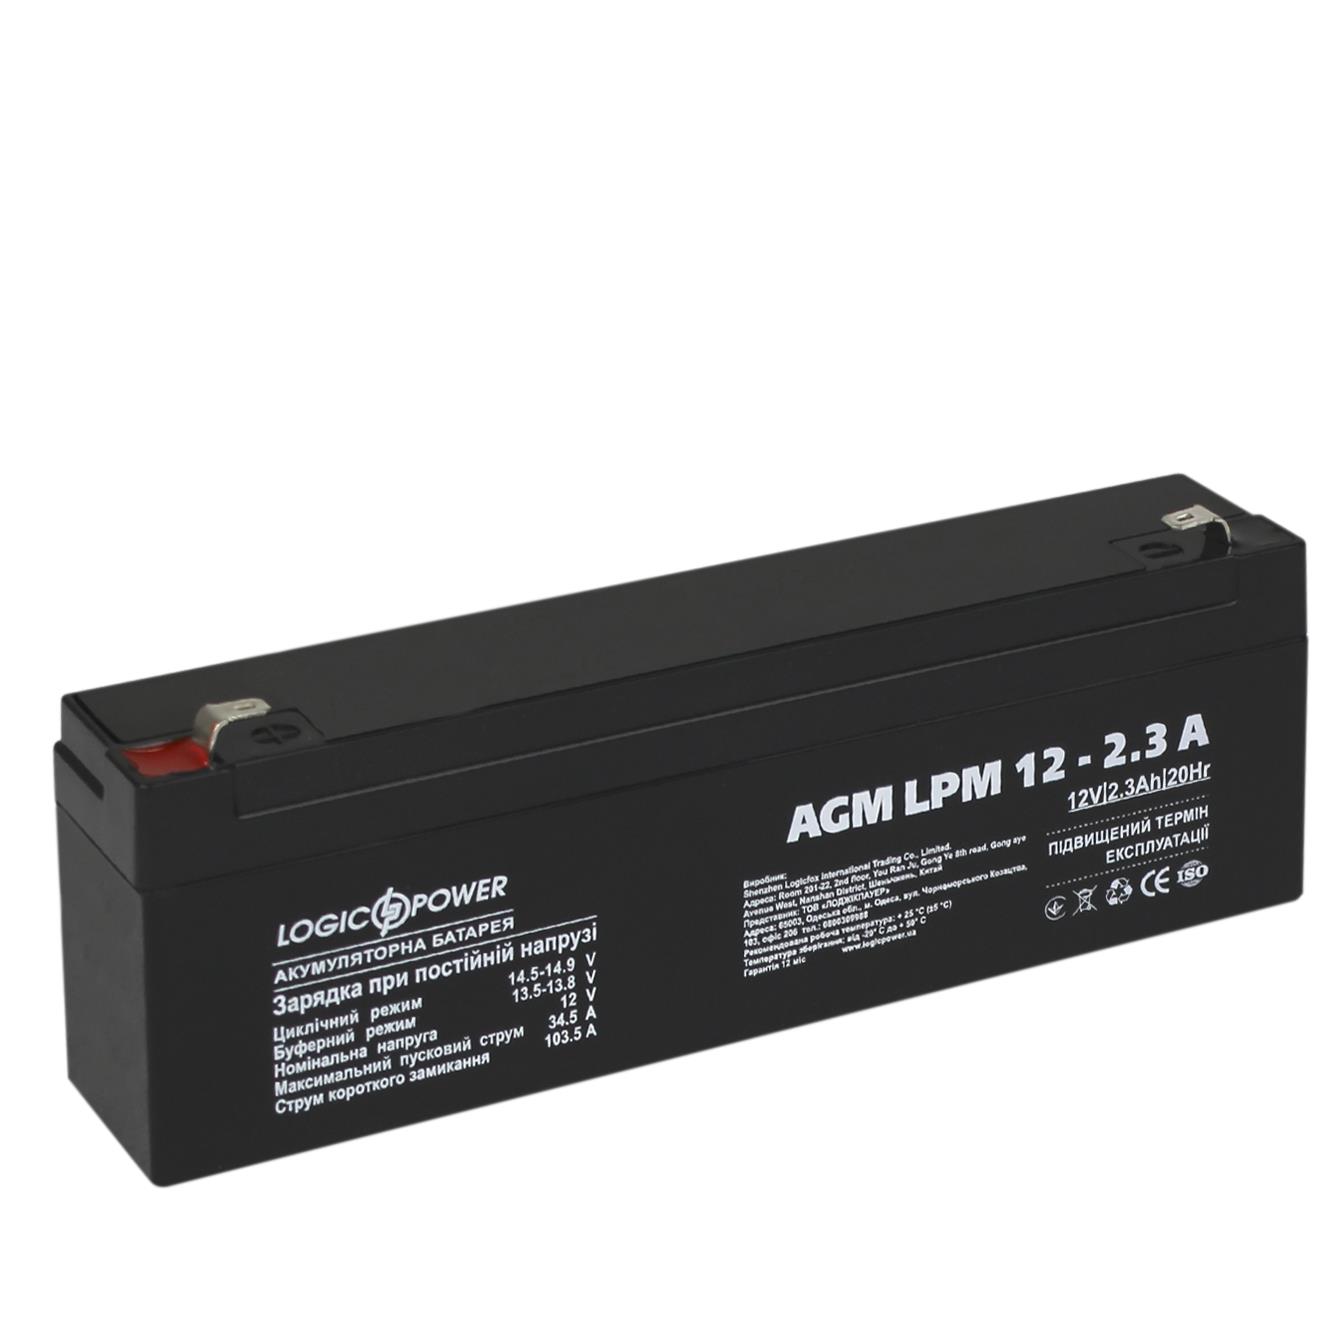 Акумулятор свинцево-кислотний LogicPower AGM LPM 12V - 2.3 Ah (4132) ціна 430.00 грн - фотографія 2